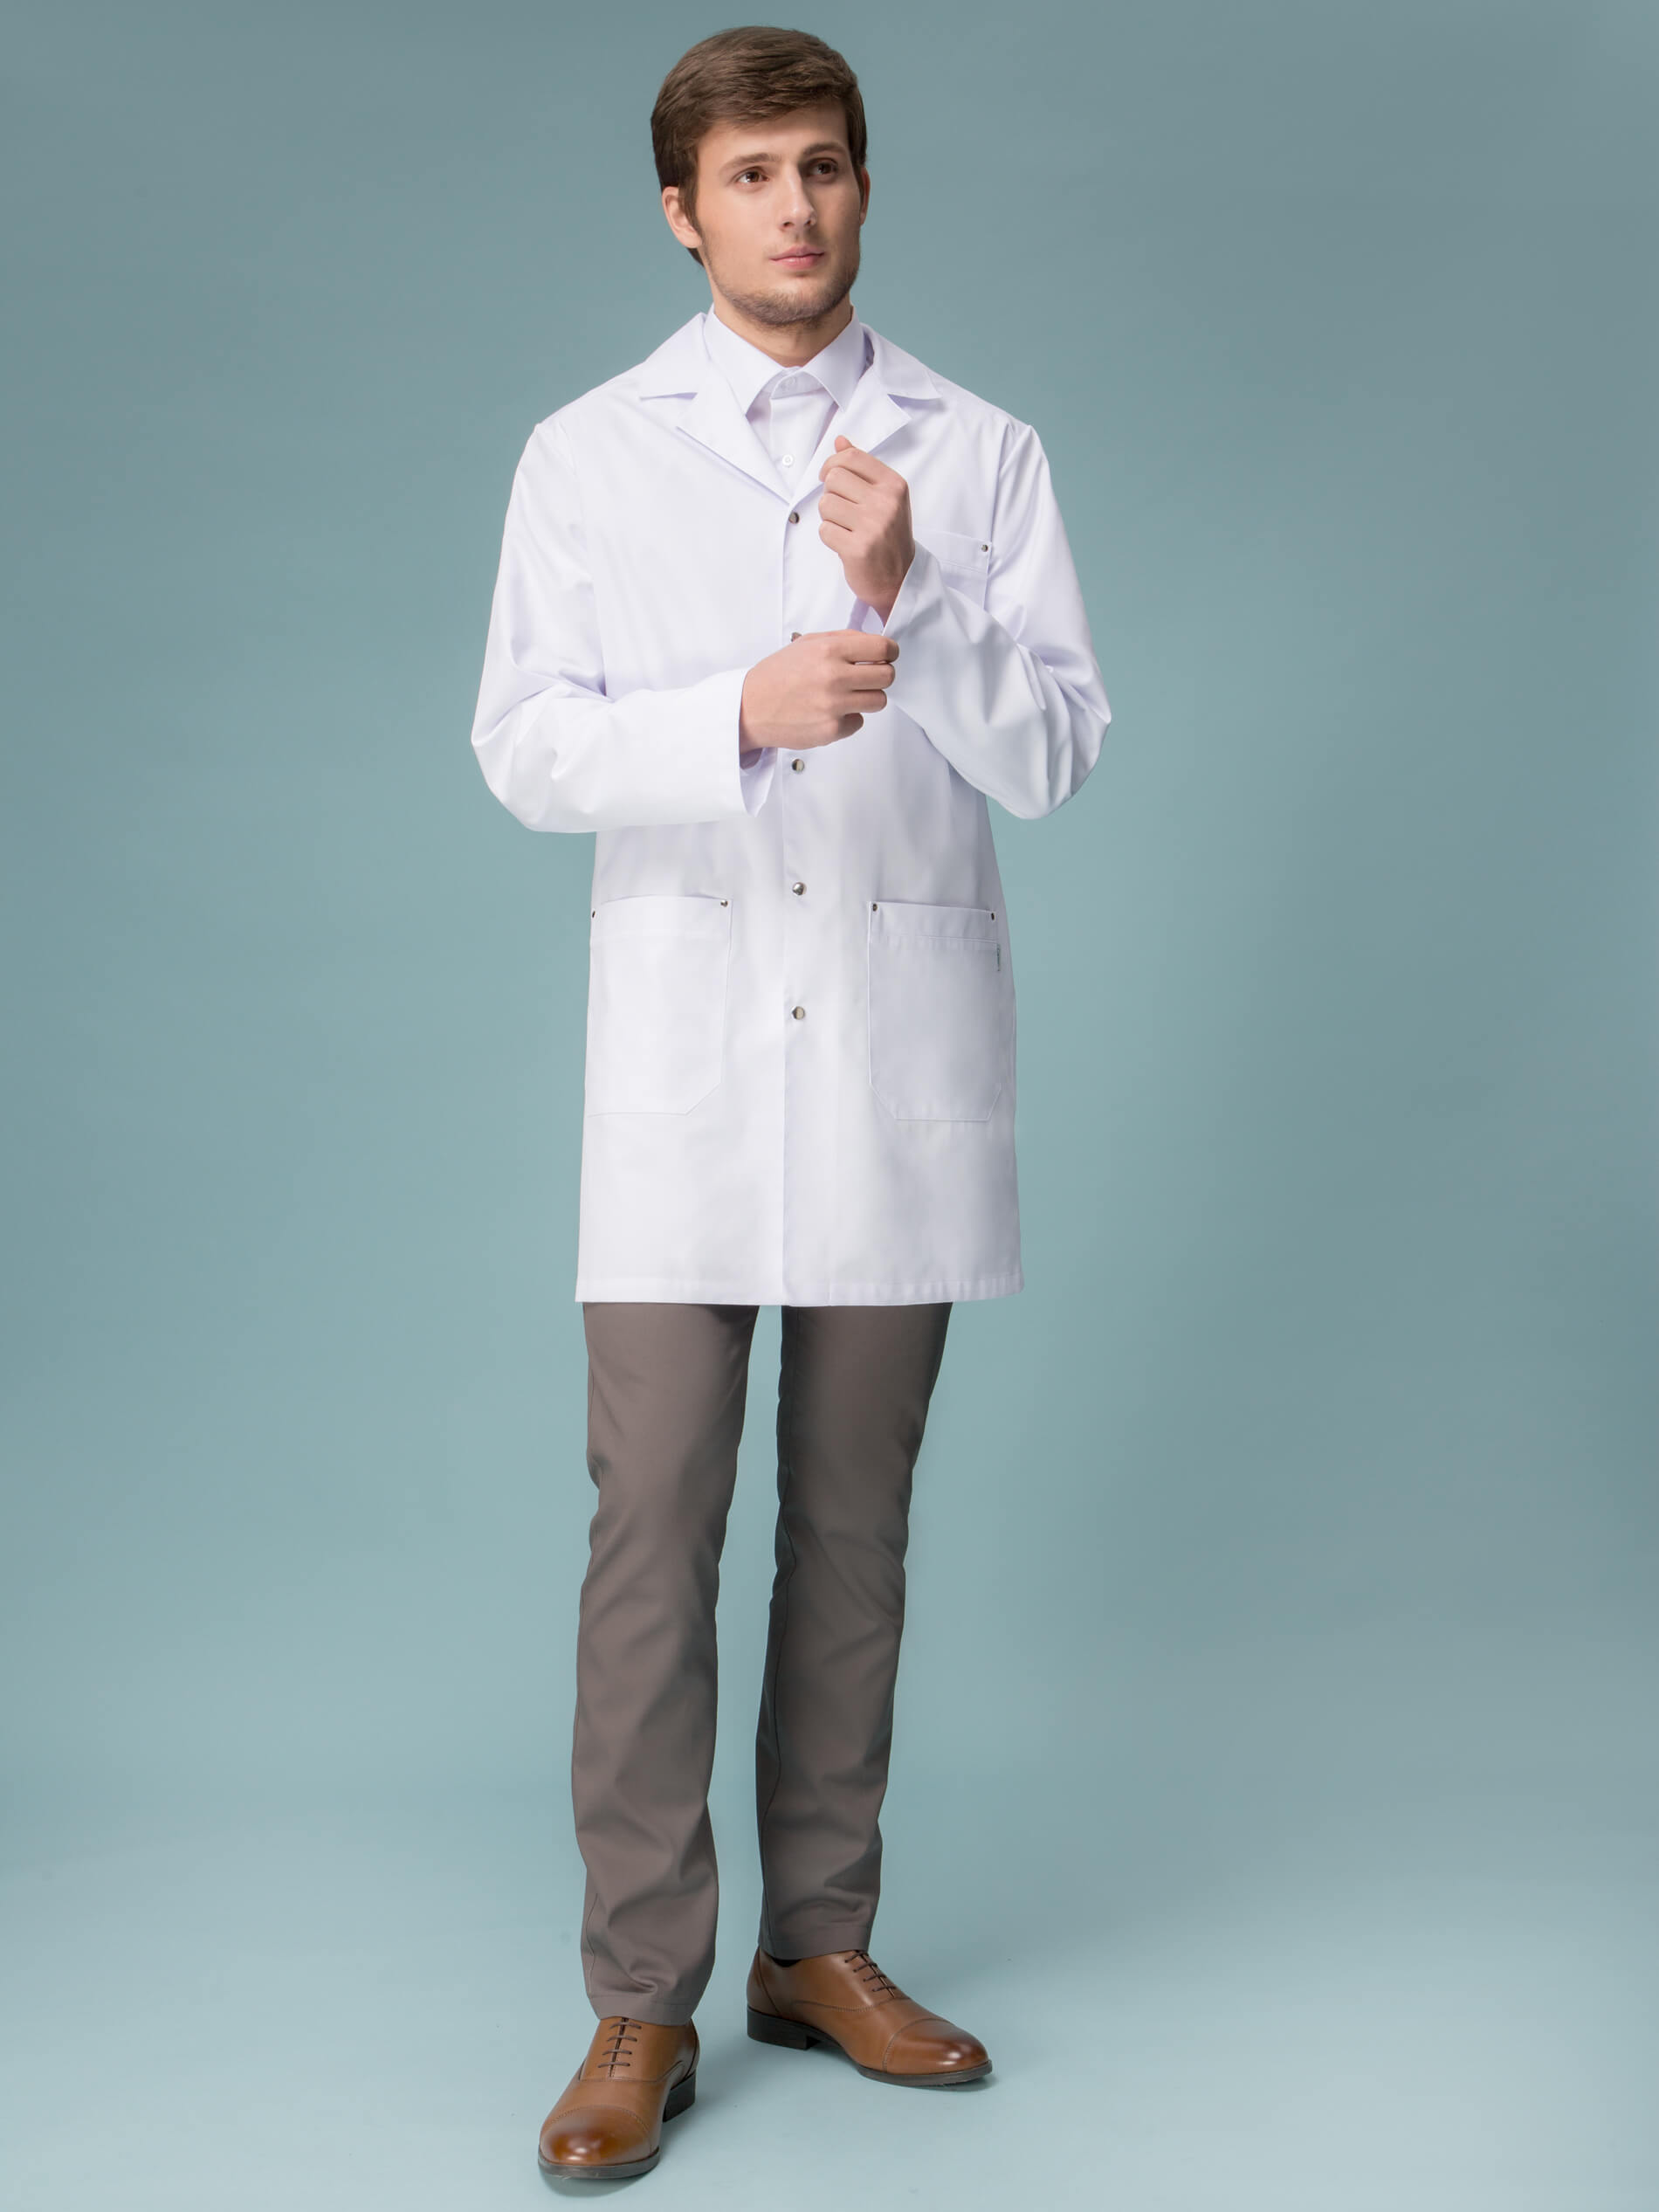 Доктор в белом халате